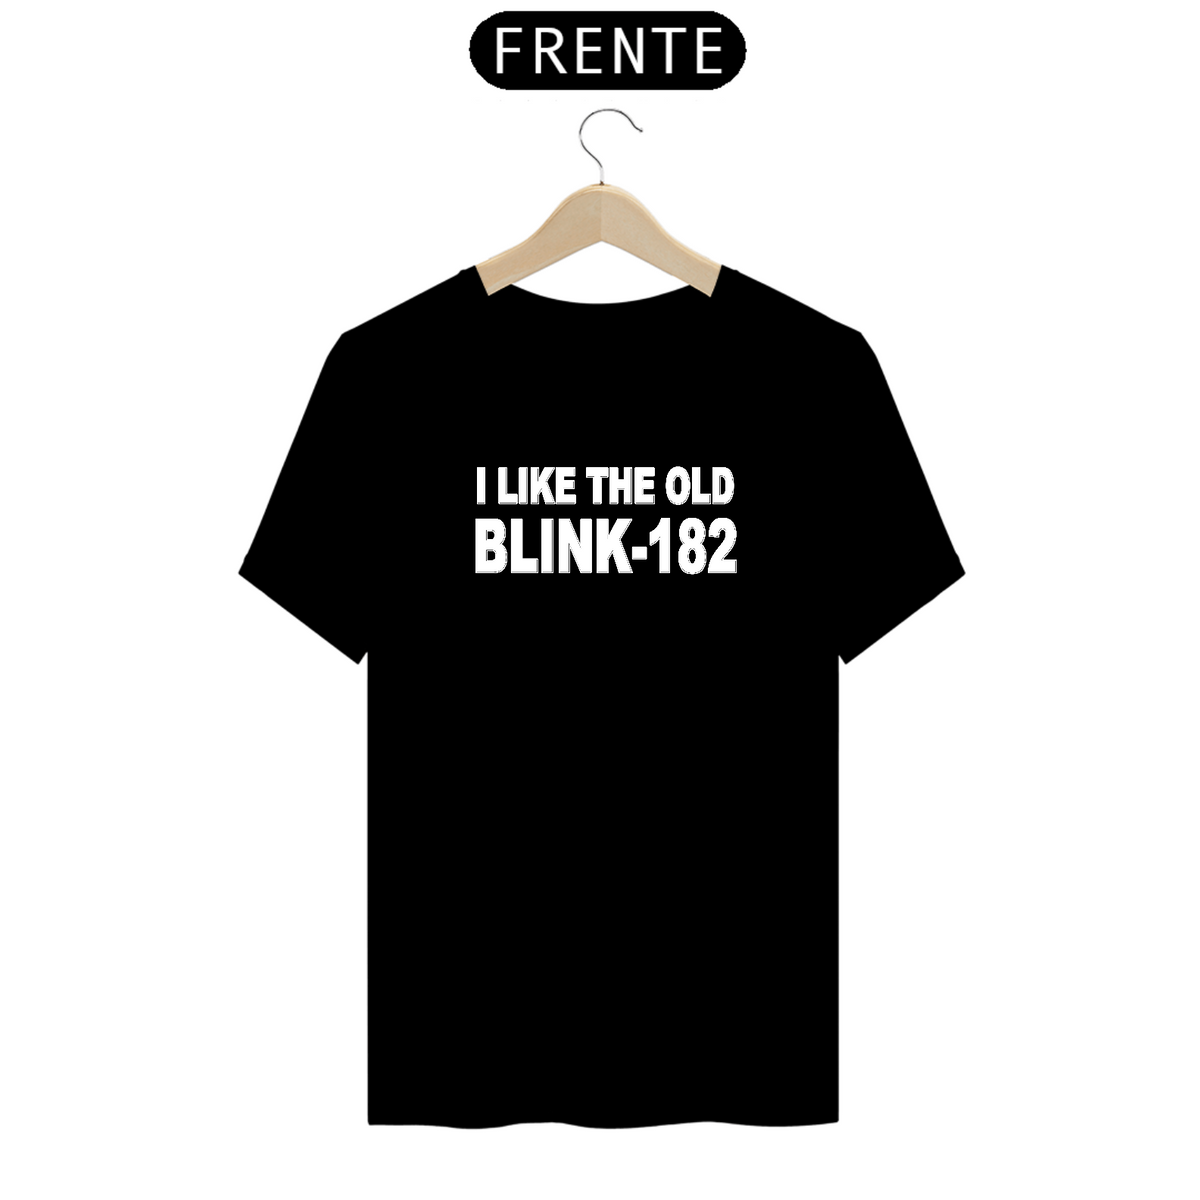 Nome do produto: Camiseta blink 182 I Like The Old blink 182 Prime 